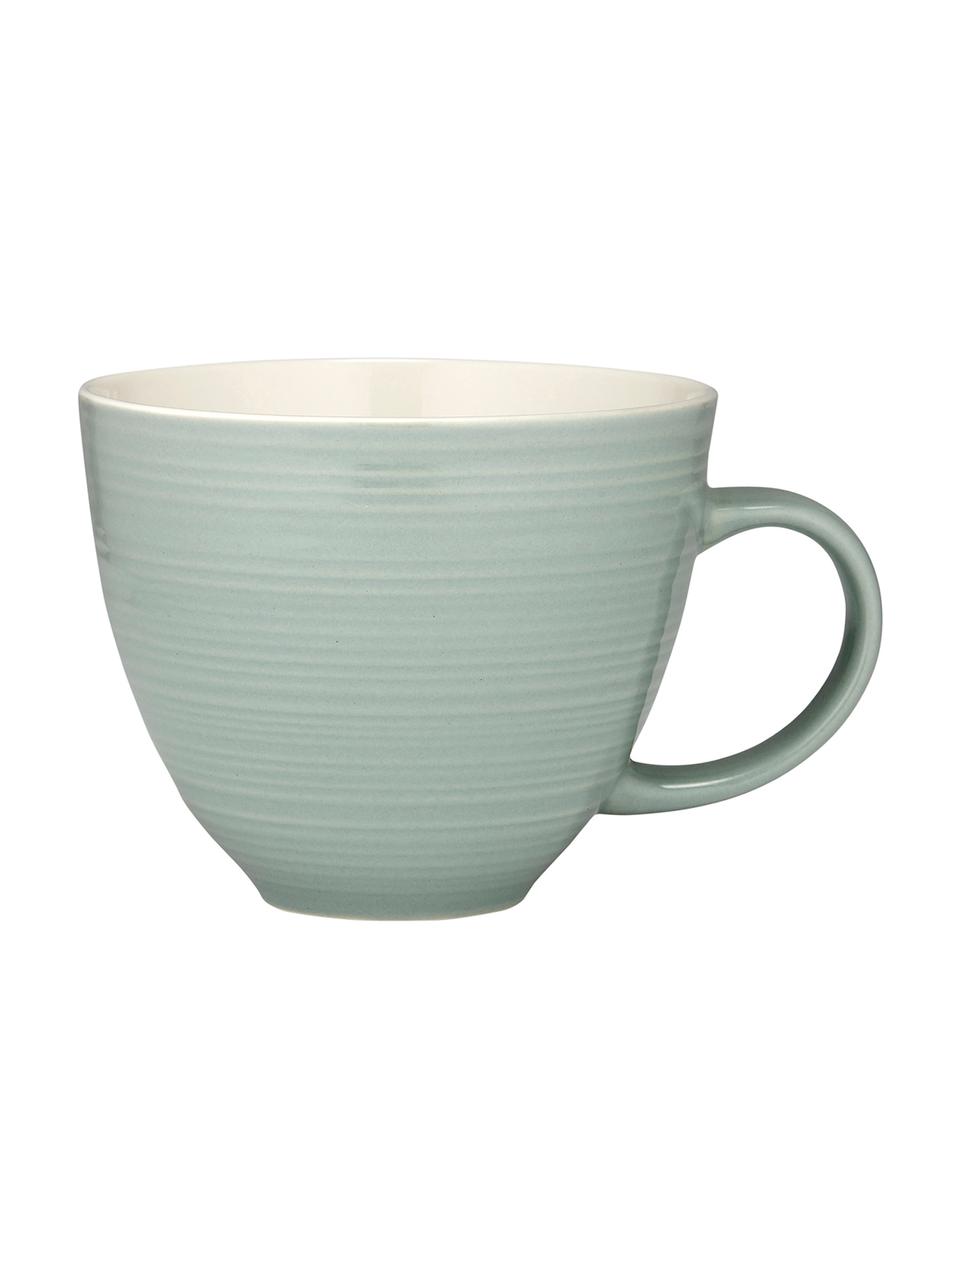 Tazza da caffè con superficie ruvida Darby 4 pz, New bone china, Verde, bianco latteo, Ø 11 x Alt. 10 cm, 500 ml